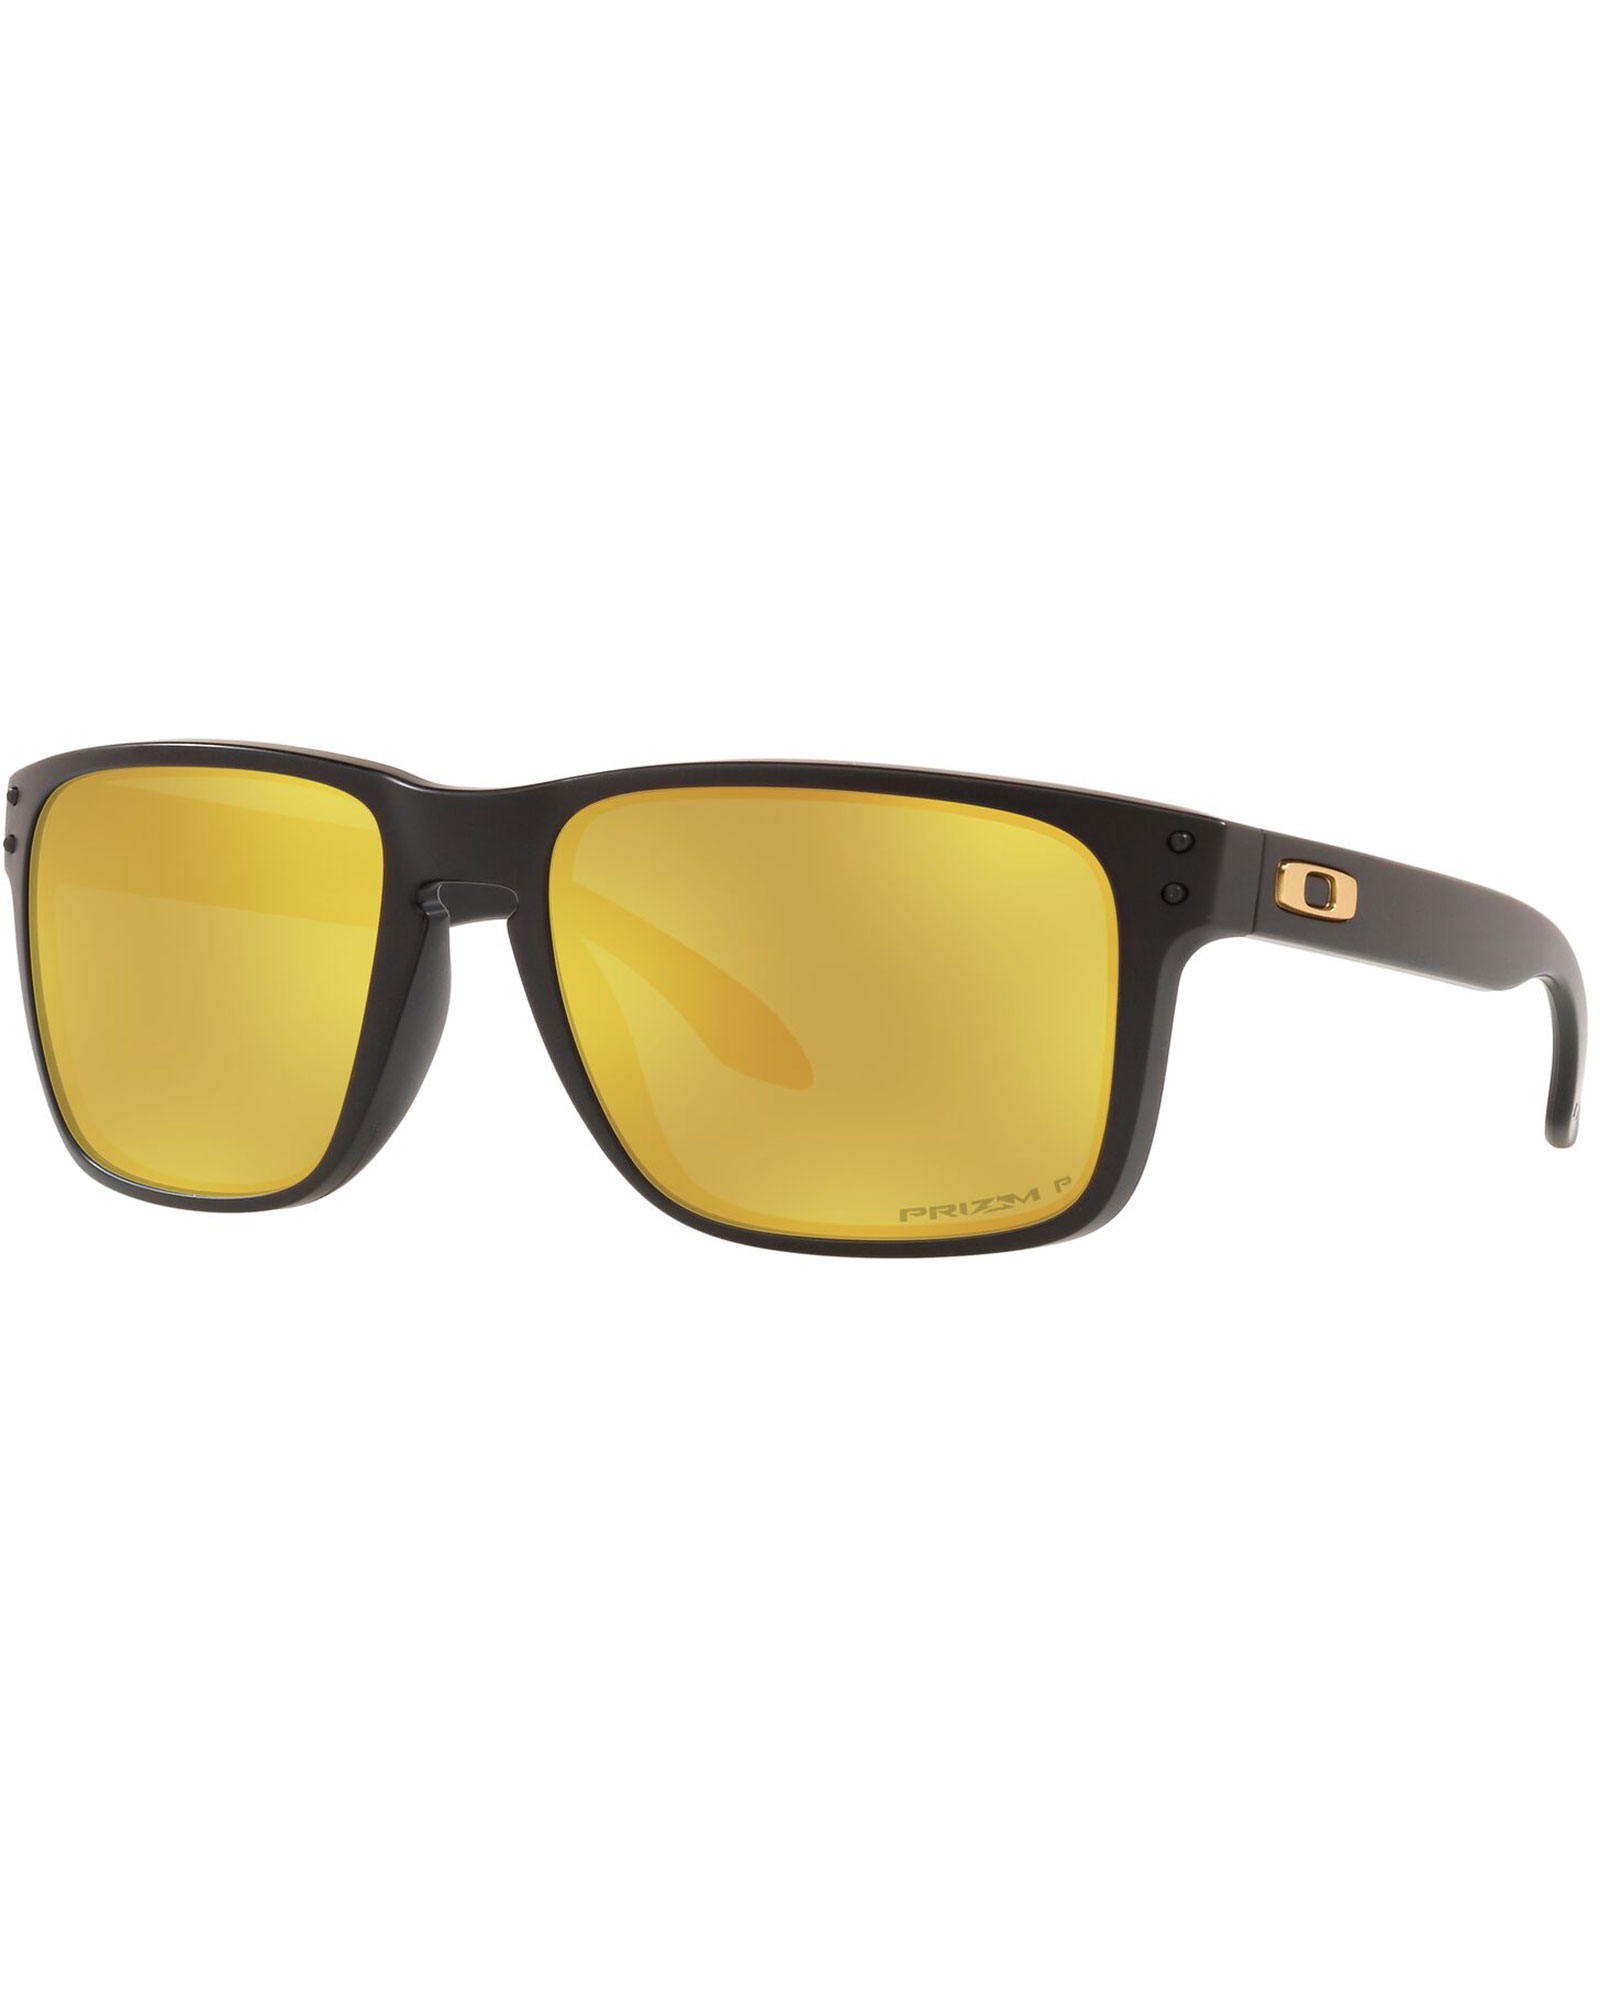 Oakley Holbrook XL Prizm 24K Polarized Sunglasses - Matte Black